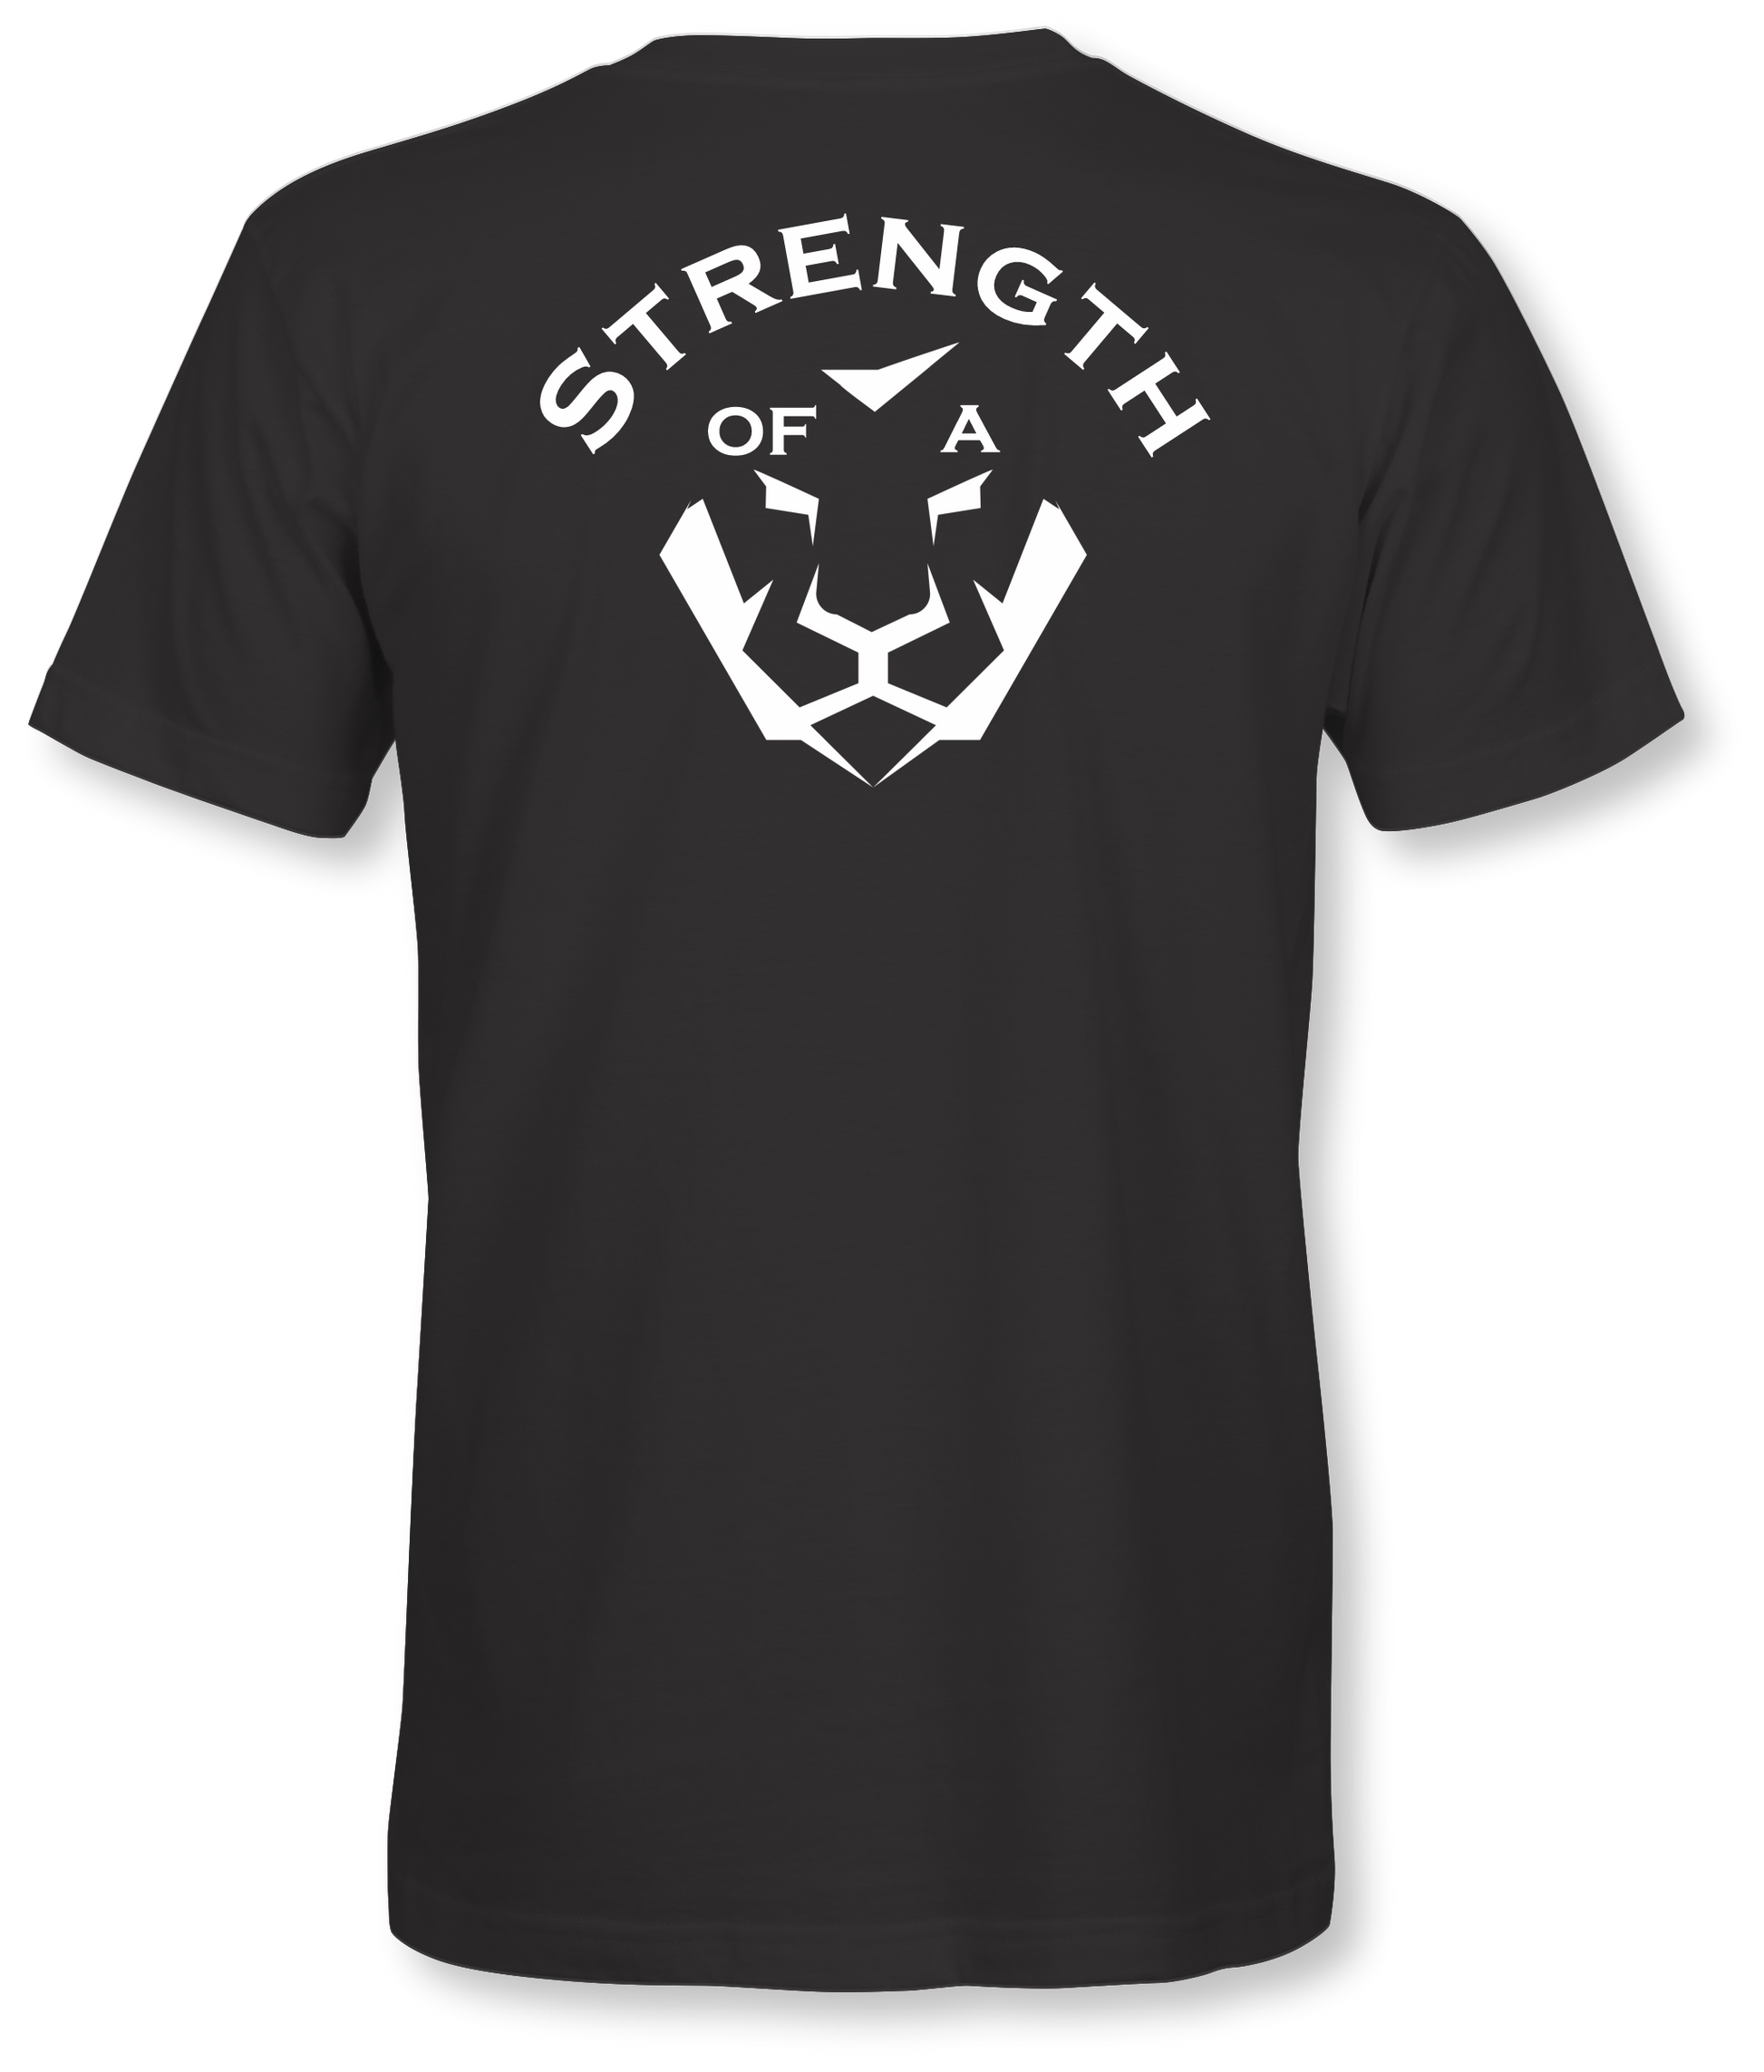 S.O.A.L - Strength of a Lion - S.O.A.L Apparel